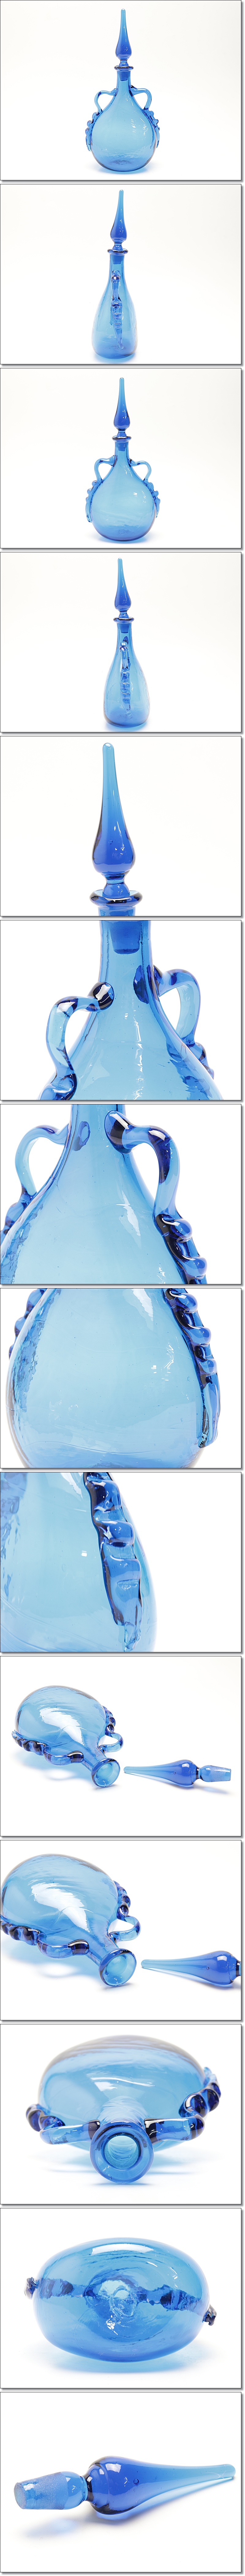 【超激得新品】倉敷ガラス デキャンタ 気泡吹き硝子 小谷ブルー 本物保証 Y323 工芸ガラス